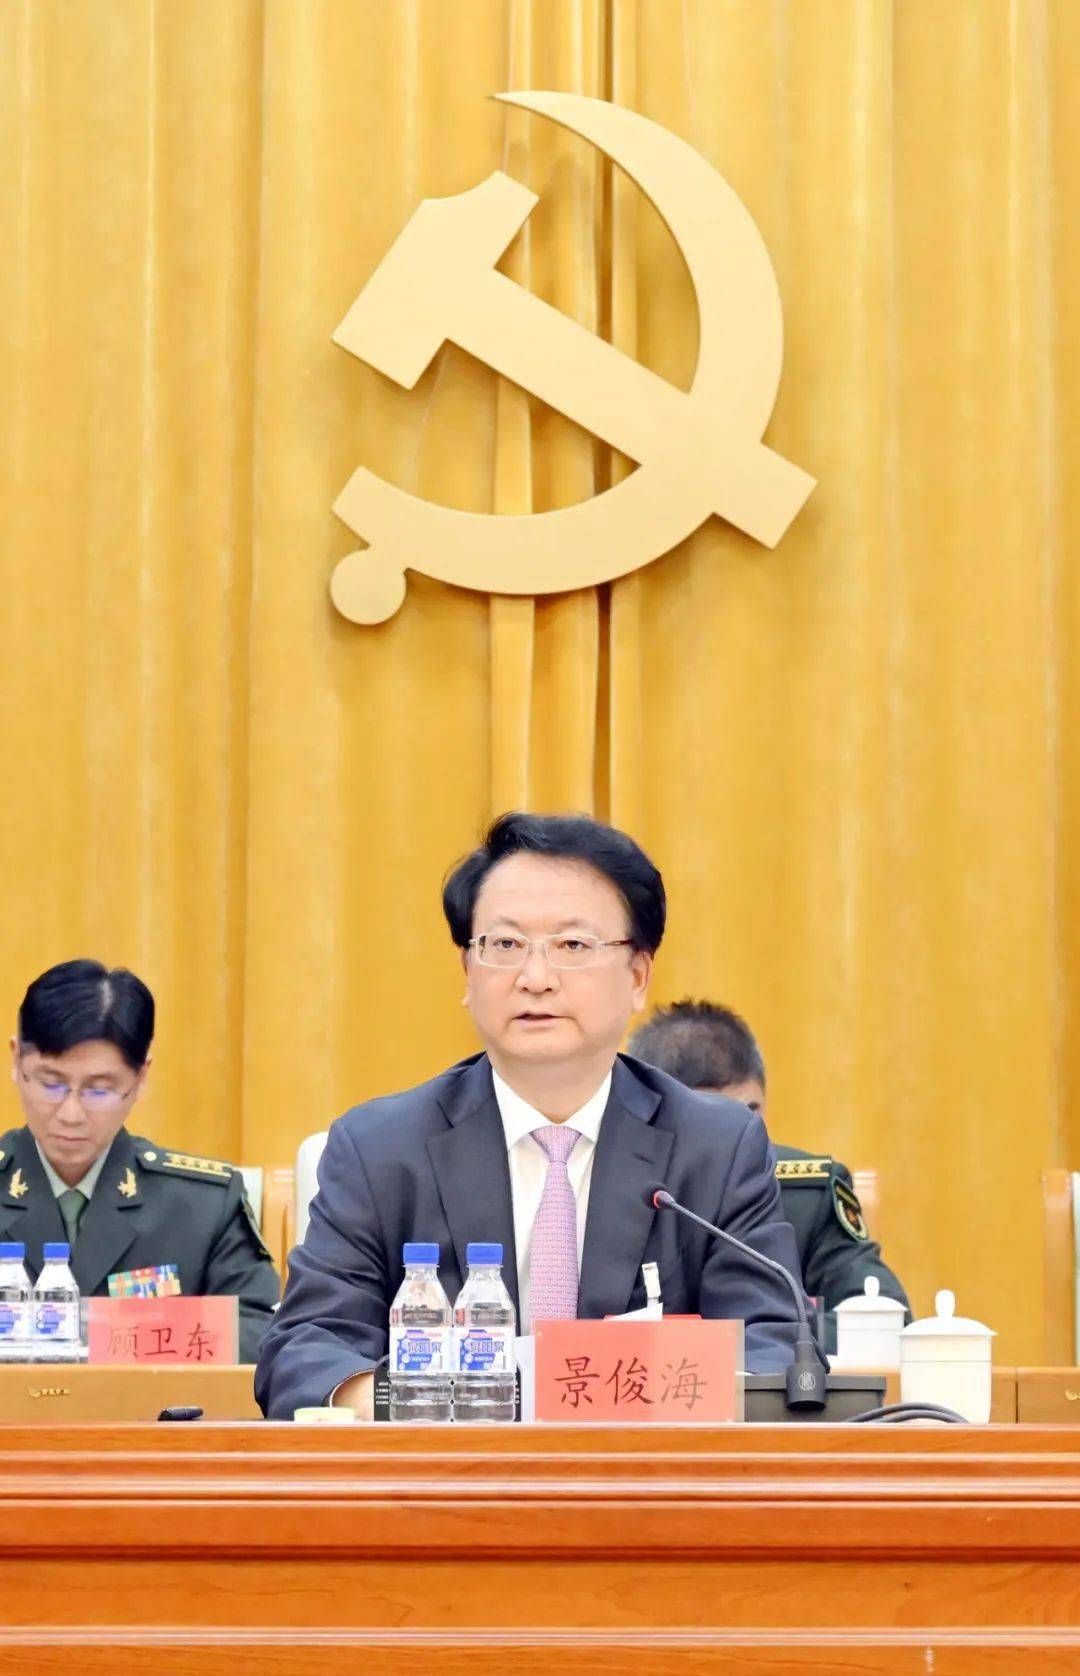 9月23日,吉林省军区第十四次党代会在长春胜利闭幕